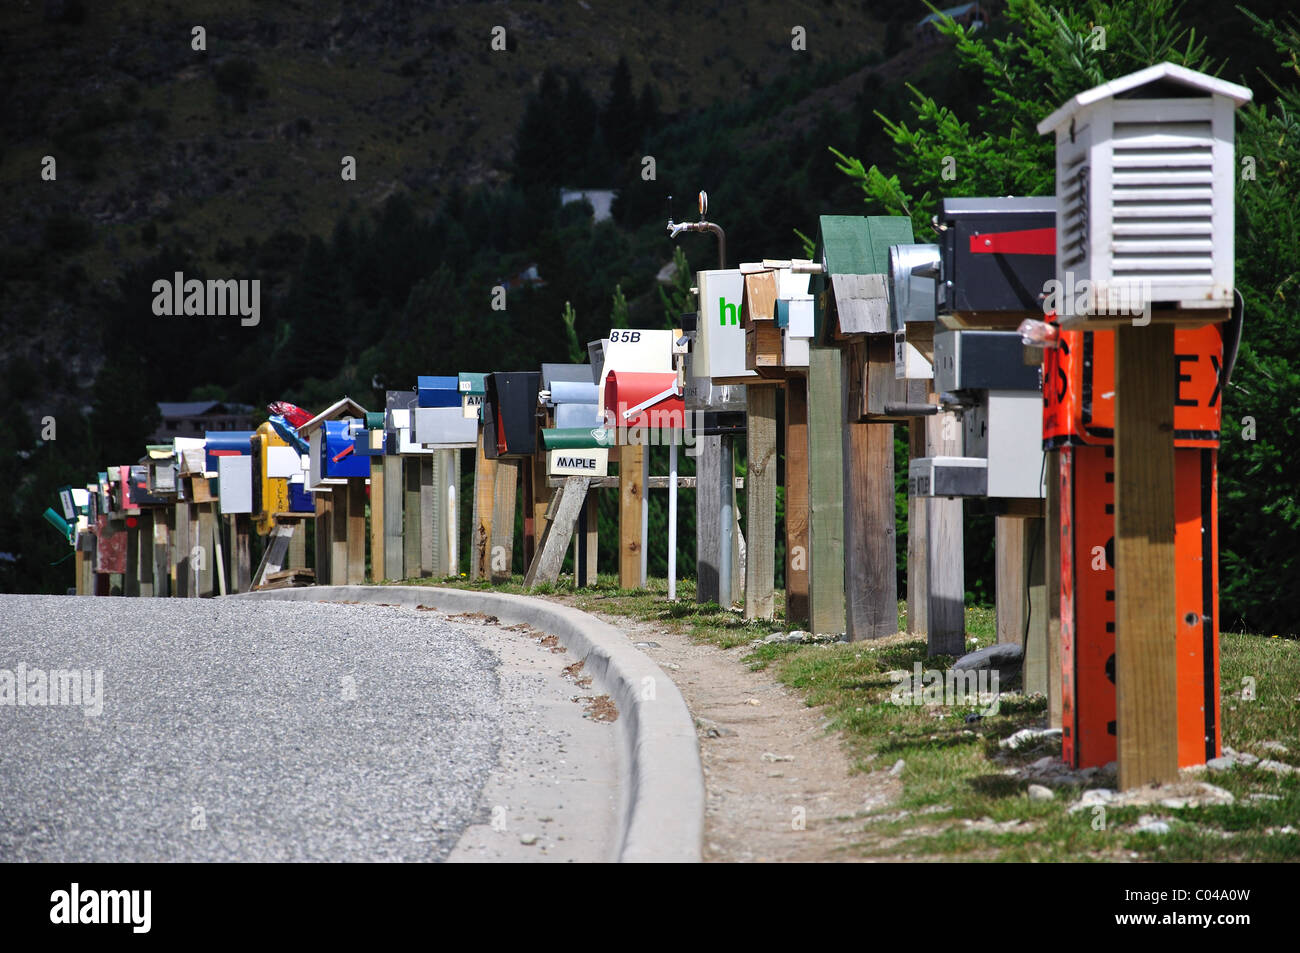 Rangée de boîtes à lettres, Queenstown, Région de l'Otago, île du Sud, Nouvelle-Zélande Banque D'Images